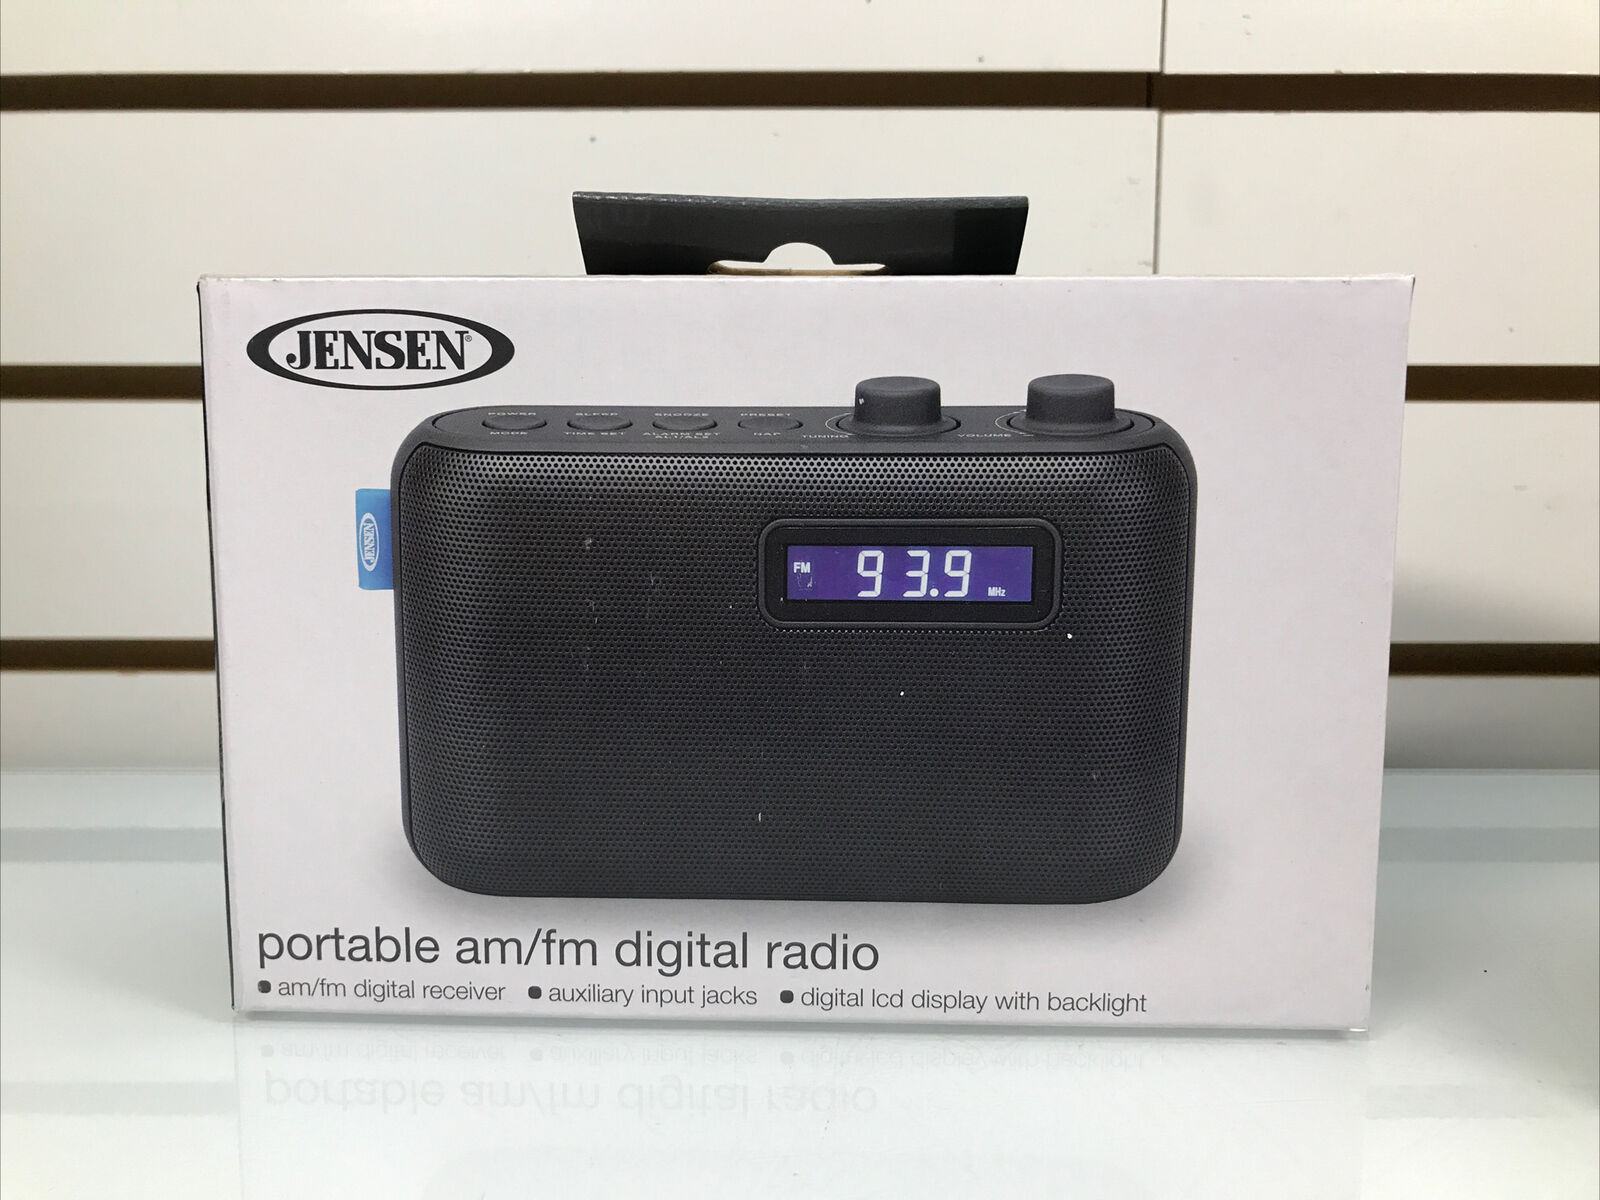 JENSEN SR-50 Portable AM/FM Digital Radio w/ Aux Input Jacks, LCD Display